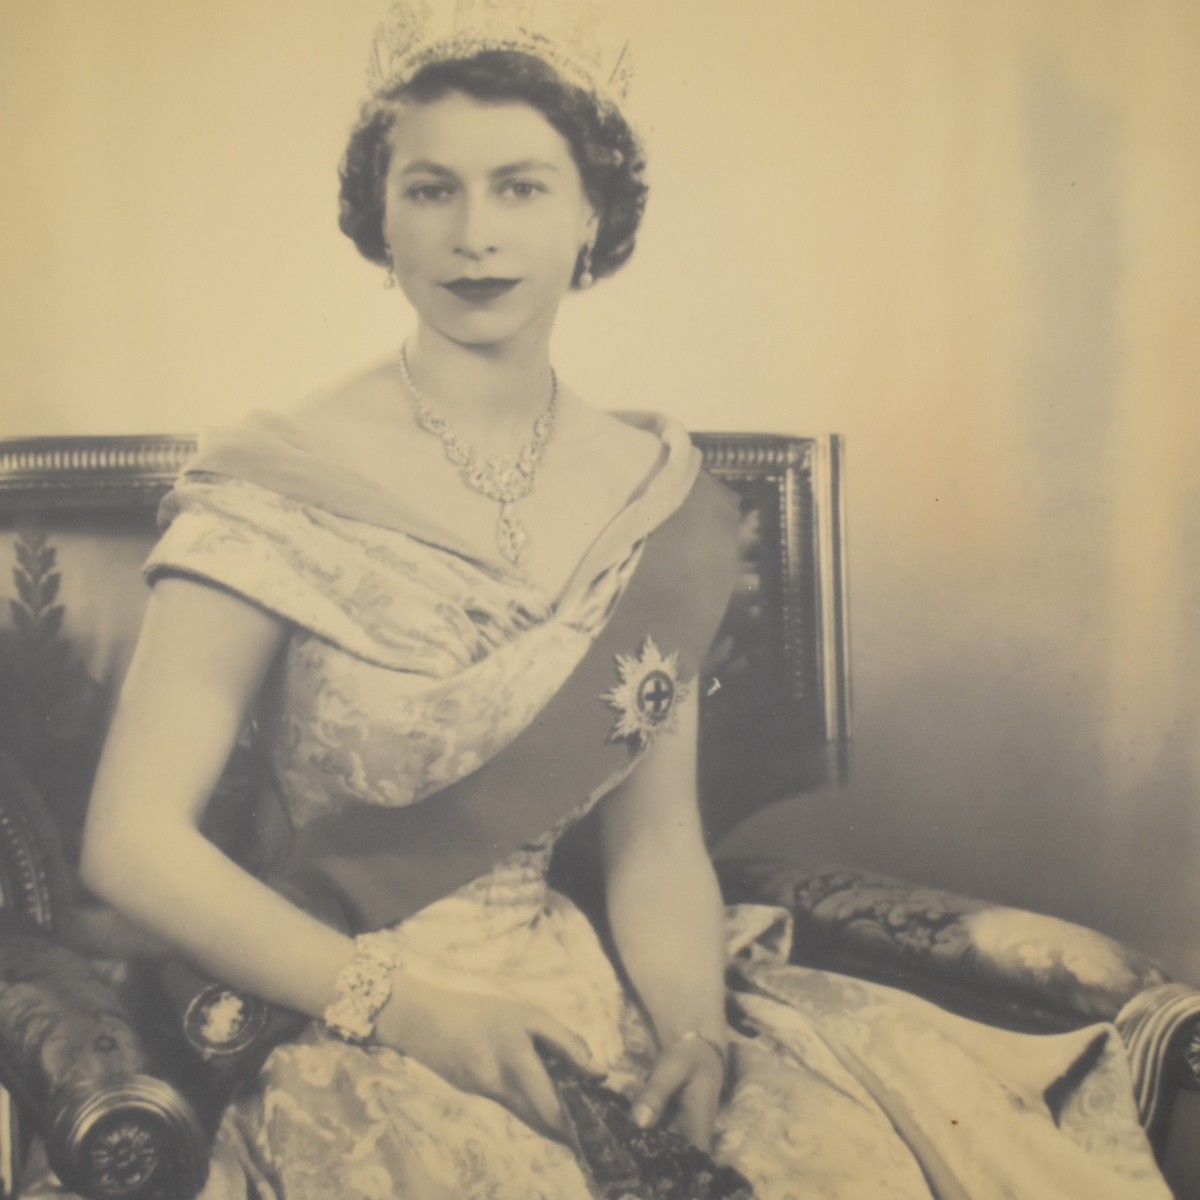 Queen Elizabeth II Autographed Photo by Wilding